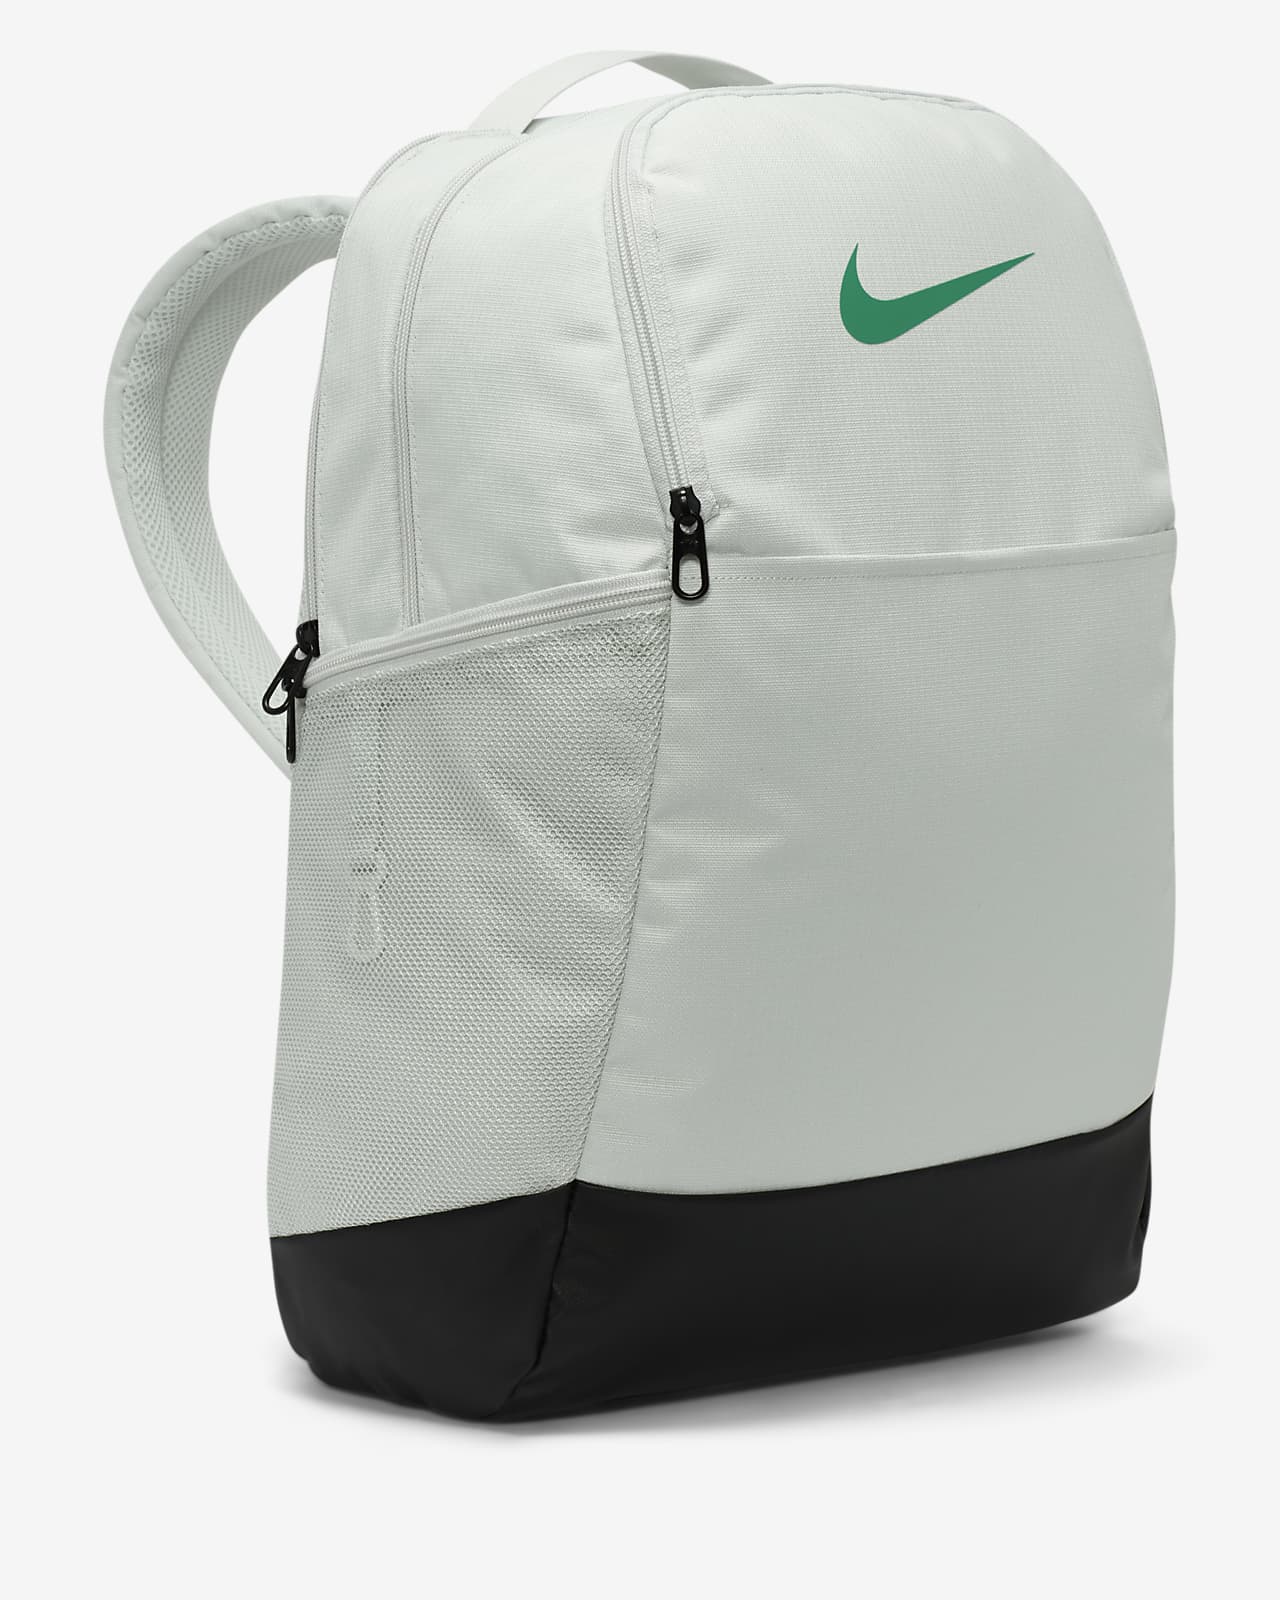 Nike Brasilia 9.5 Training Medium Backpack - Black/White